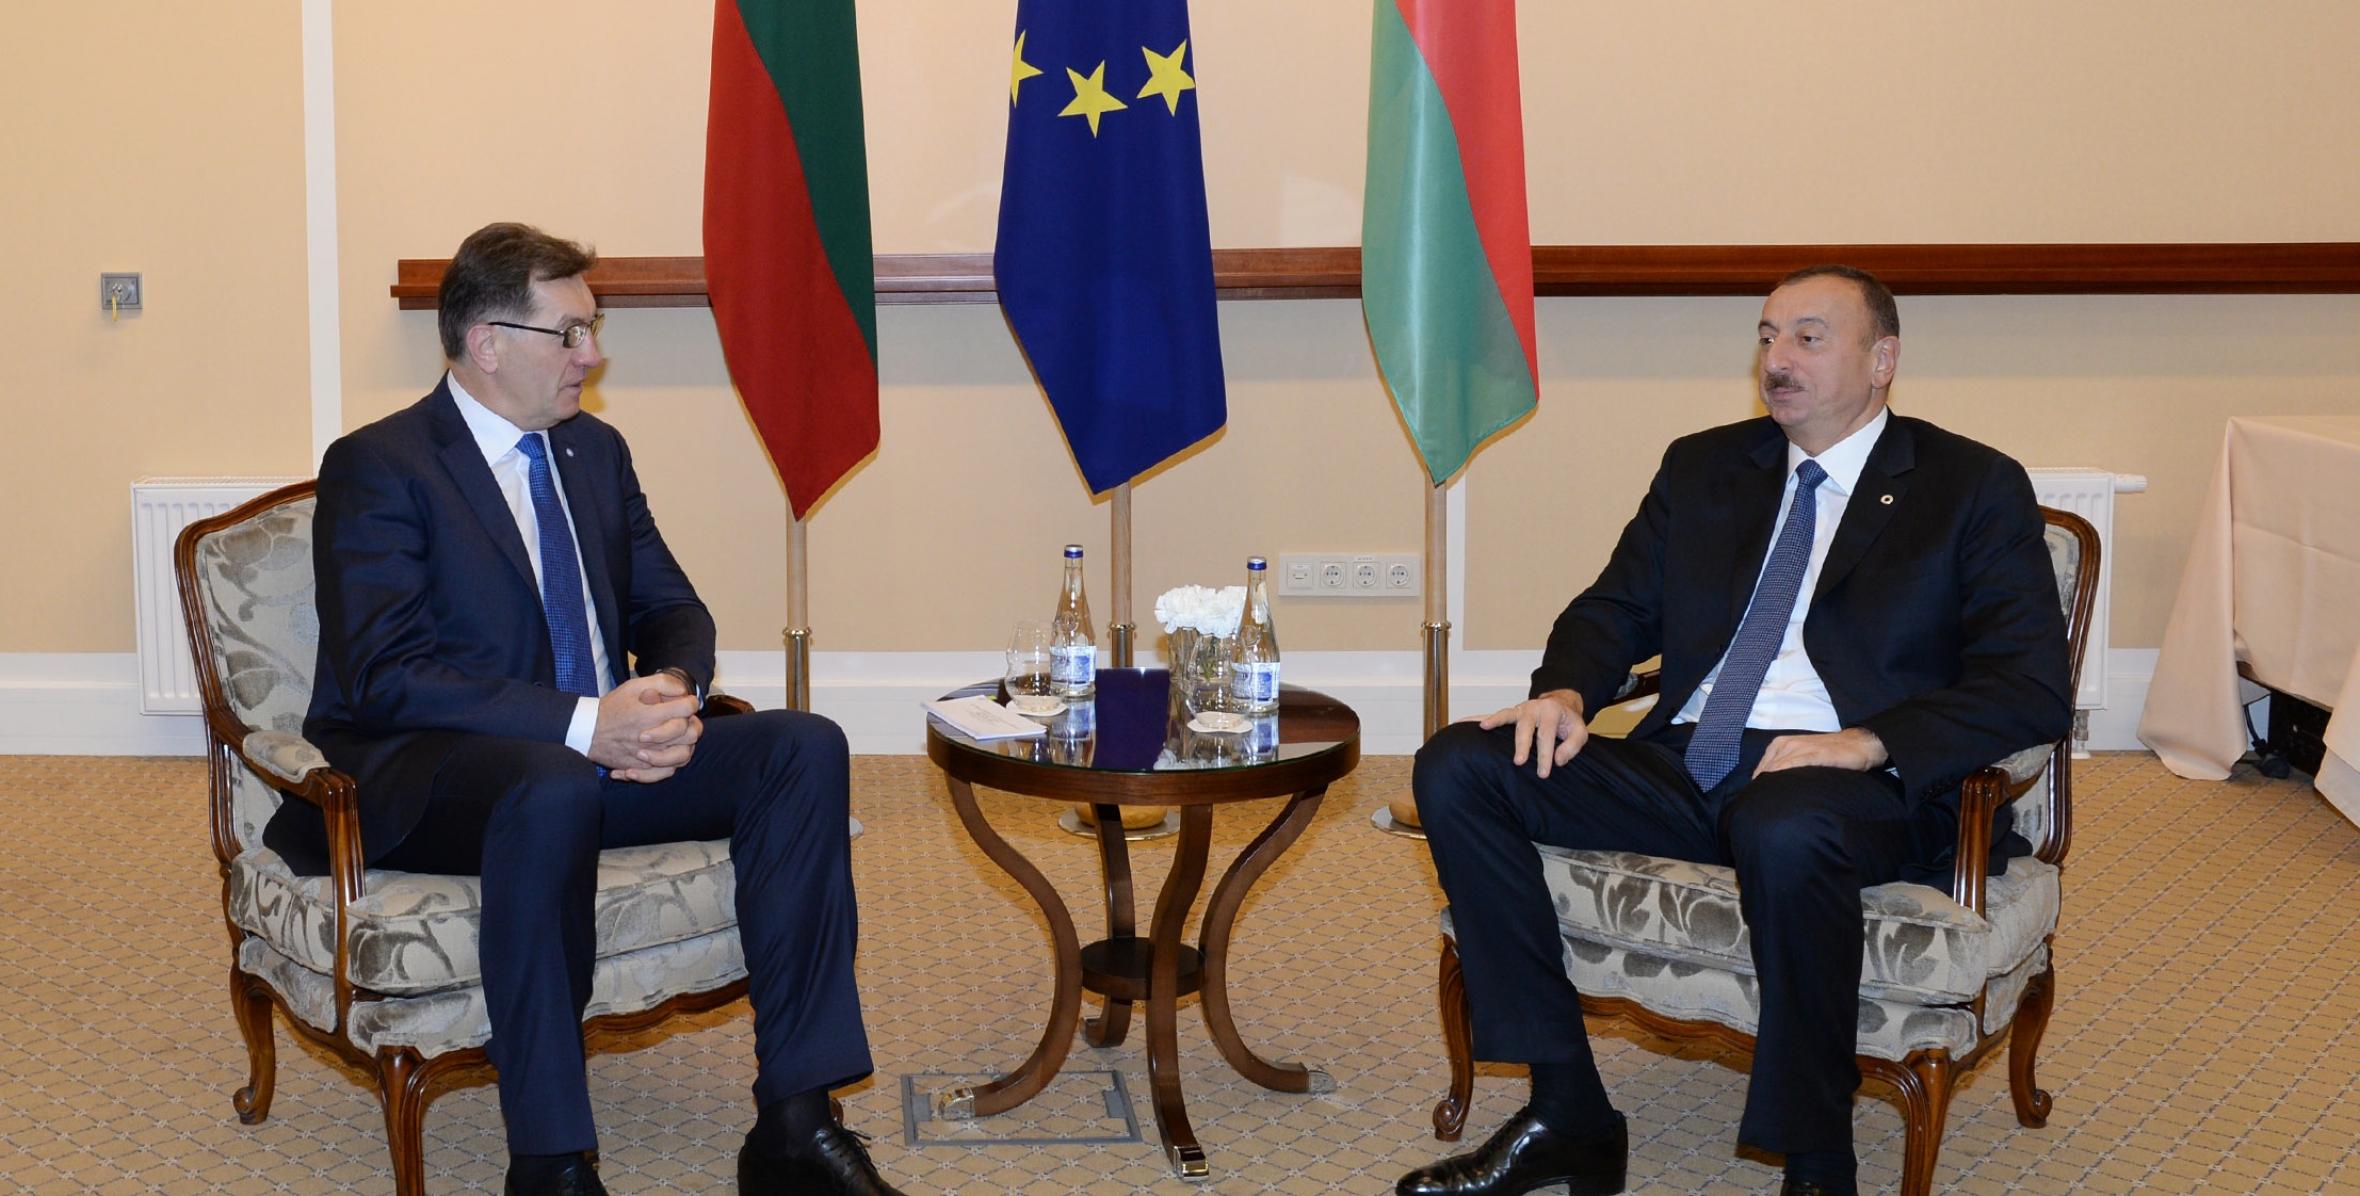 Ильхам Алиев встретился в Вильнюсе с премьер-министром Литвы Альгирдасом Буткявичюсом